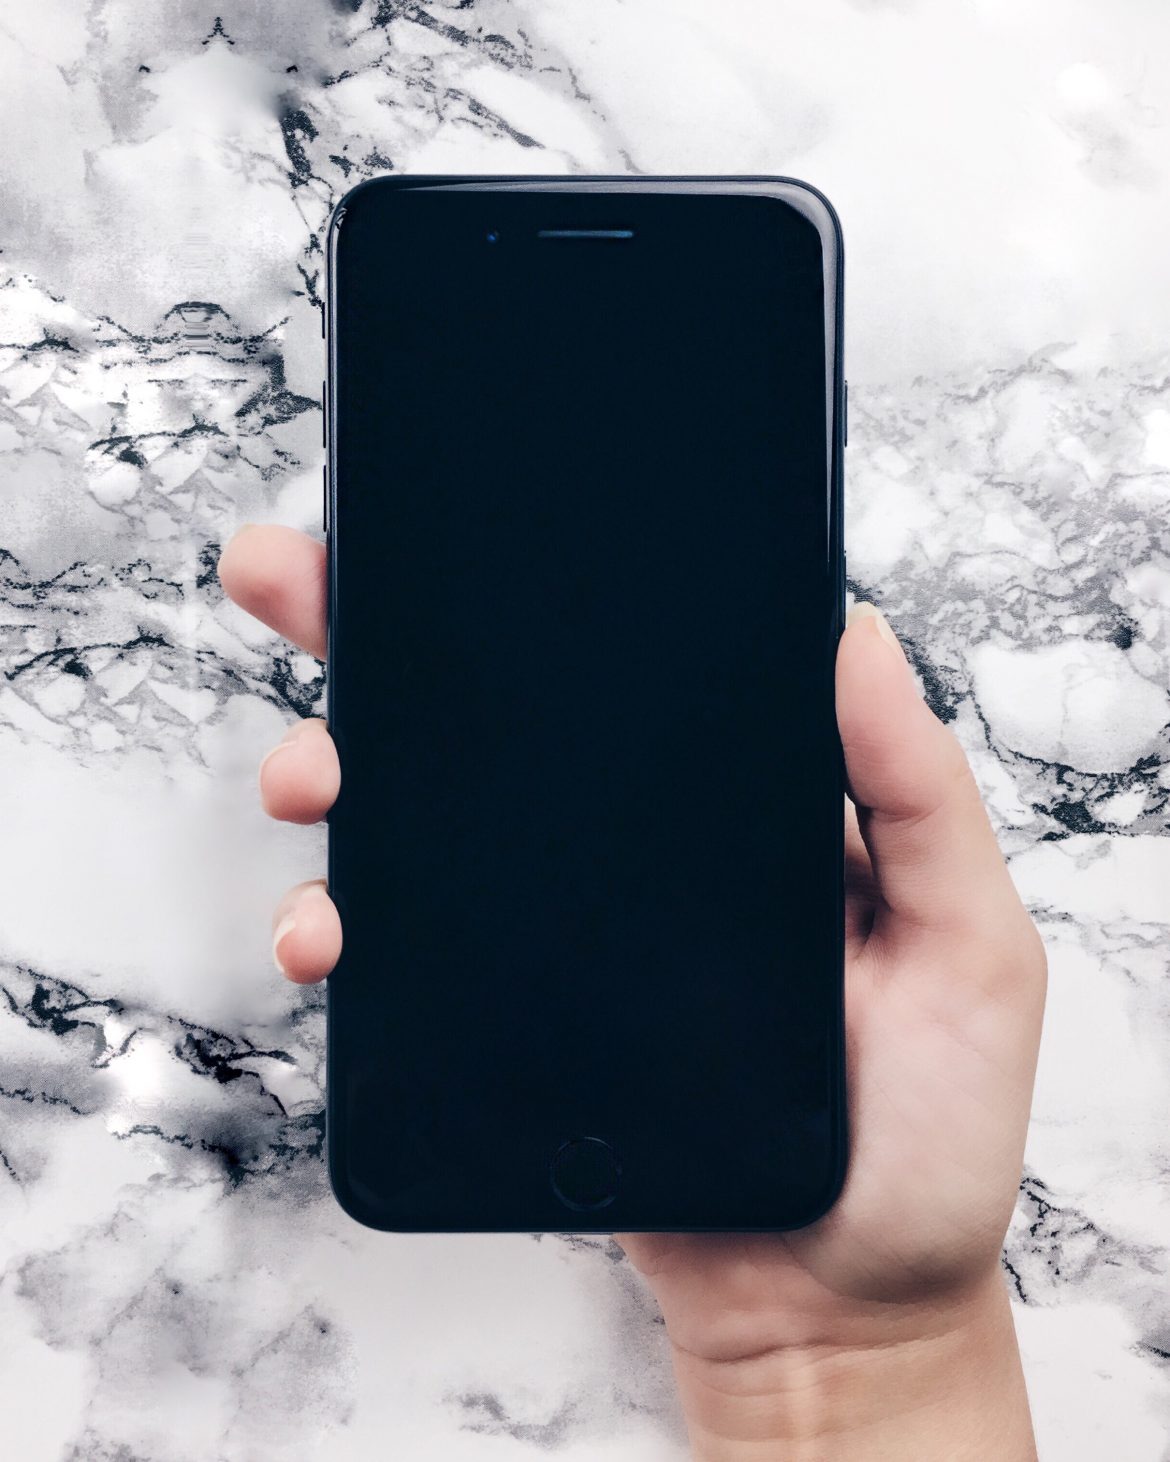 Iphone 7 Plus preto brilhante - Iphone 7 plus jet black